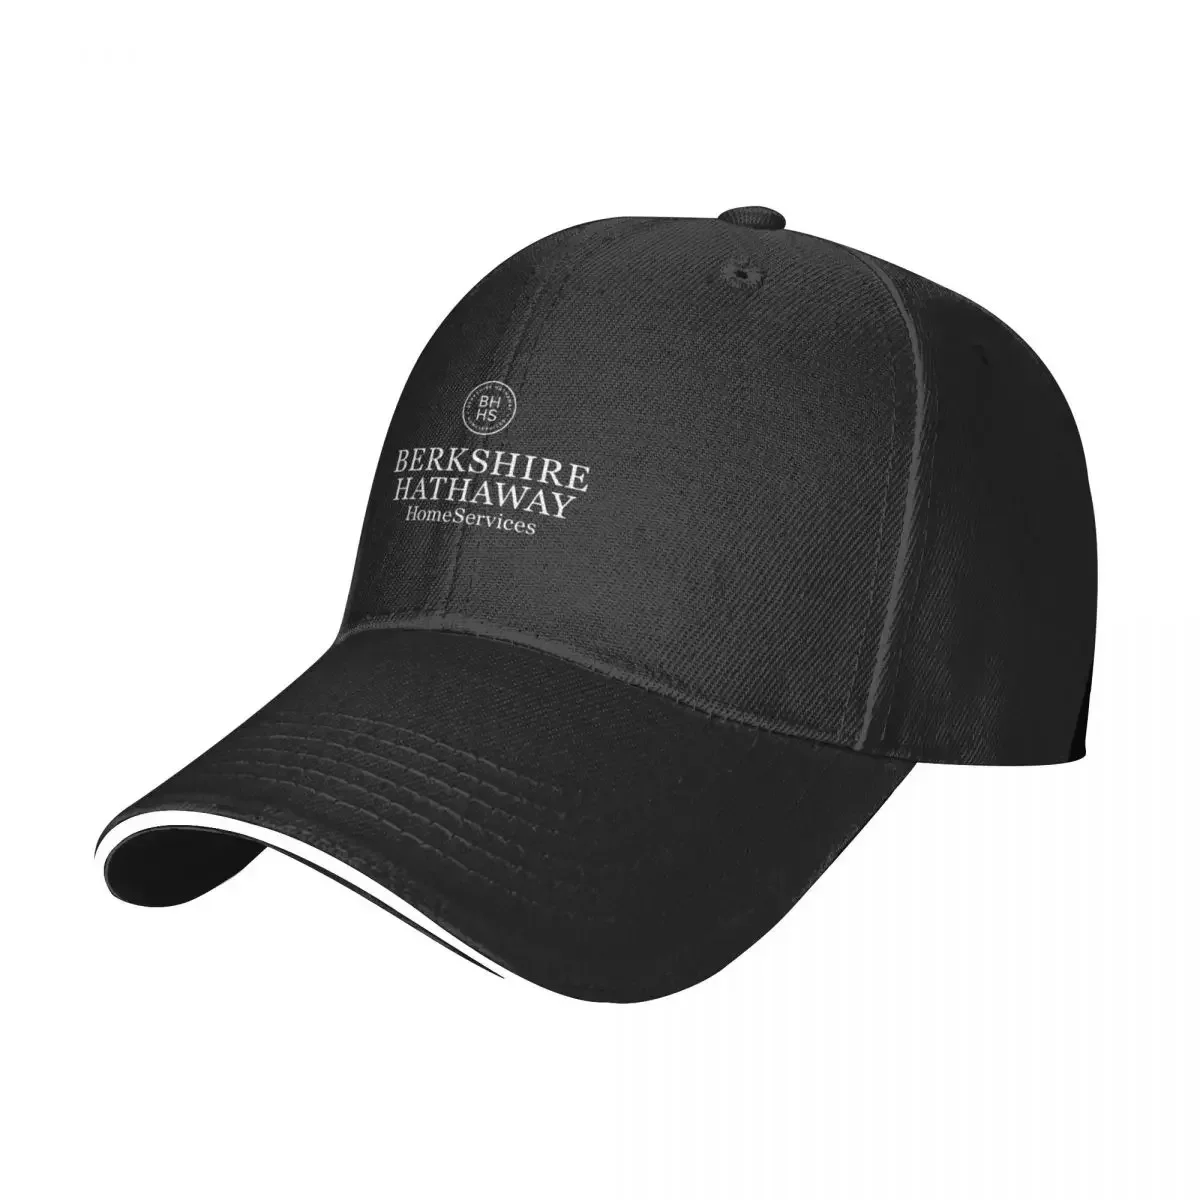 

BEST SELLING - Berkshire Hathaway Cap Baseball Cap Sandwich Cap New In The Hat Hat Winter for Women Men's